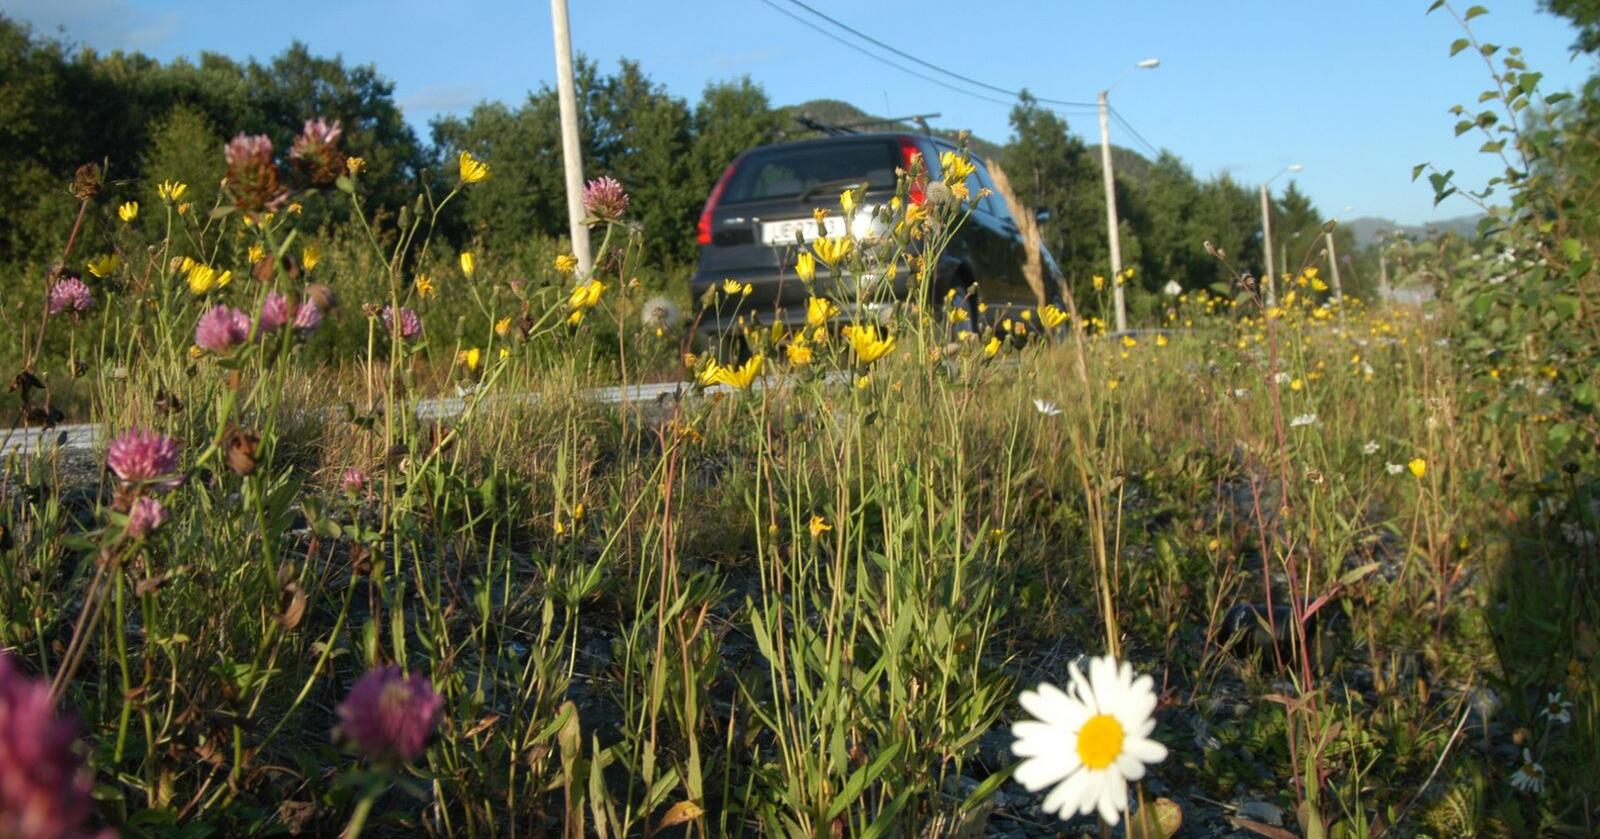 Det brukes 90 prosent mindre plantevernmidler langs veiene i Norge enn før. Foto: Knut Opeide